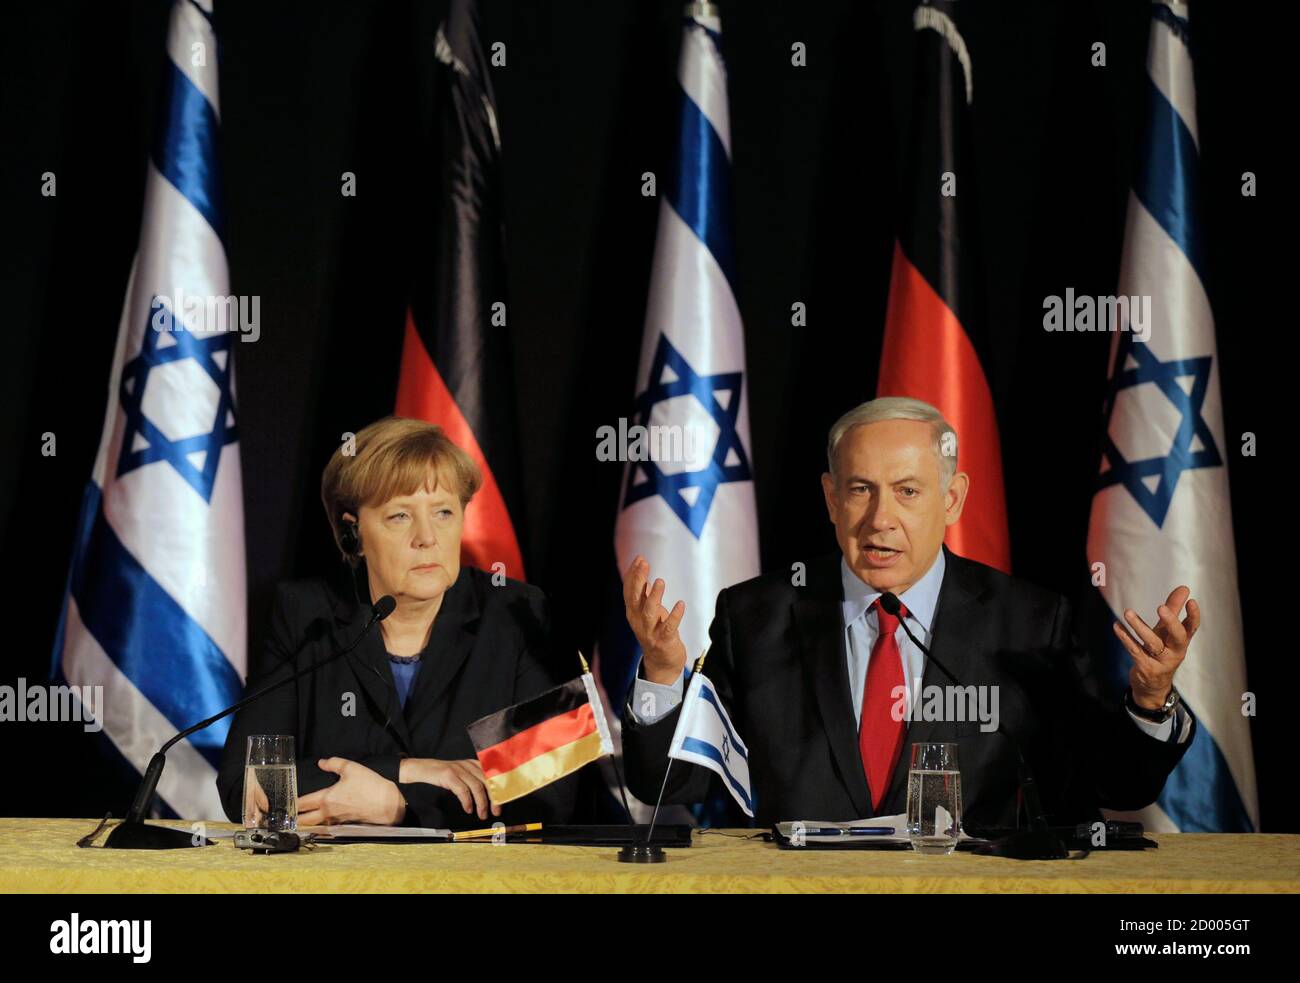 Israels Prime Minister Benjamin Netanyahu (R) sitzt neben Bundeskanzlerin Angela Merkel, als er während der gemeinsamen Pressekonferenz in Jerusalem 25. Februar 2014 spricht. Deutschland sieht Iran als eine potenzielle Bedrohung nicht nur für Israel, aber auch in europäische Länder, Merkel, sagte am Dienstag auf einer gemeinsamen Pressekonferenz mit Netanyahu. REUTERS/Ammar Awad (JERUSALEM - Tags: Politik) Stockfoto